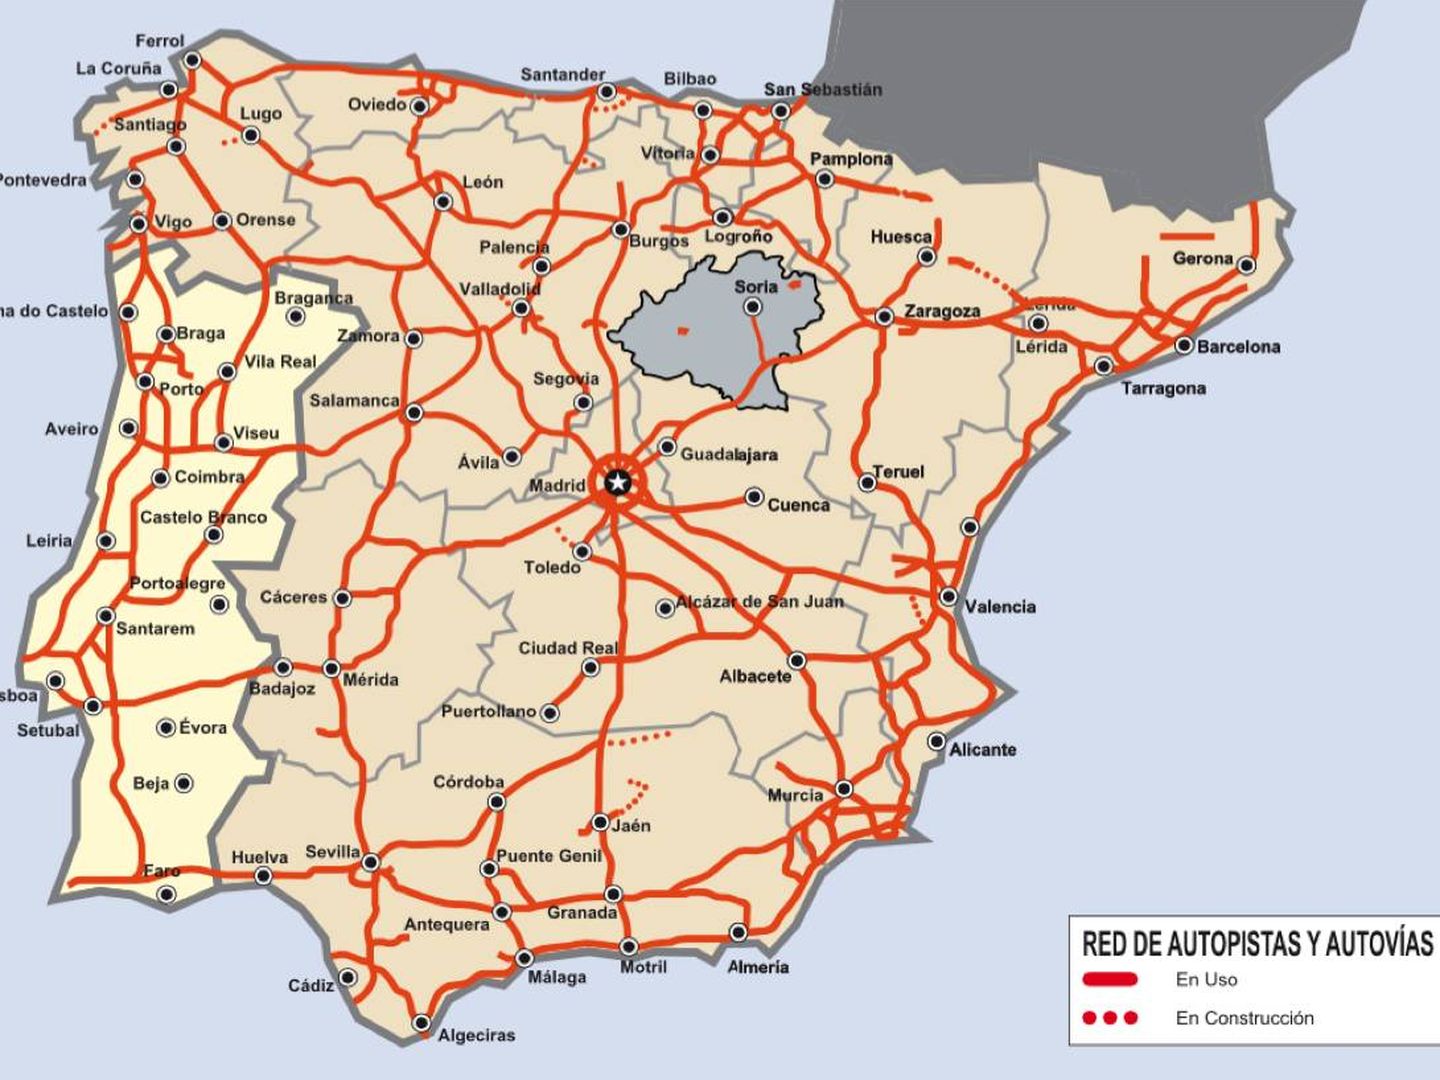 Red viaria en la península ibérica, con la provincia de Soria destacada.